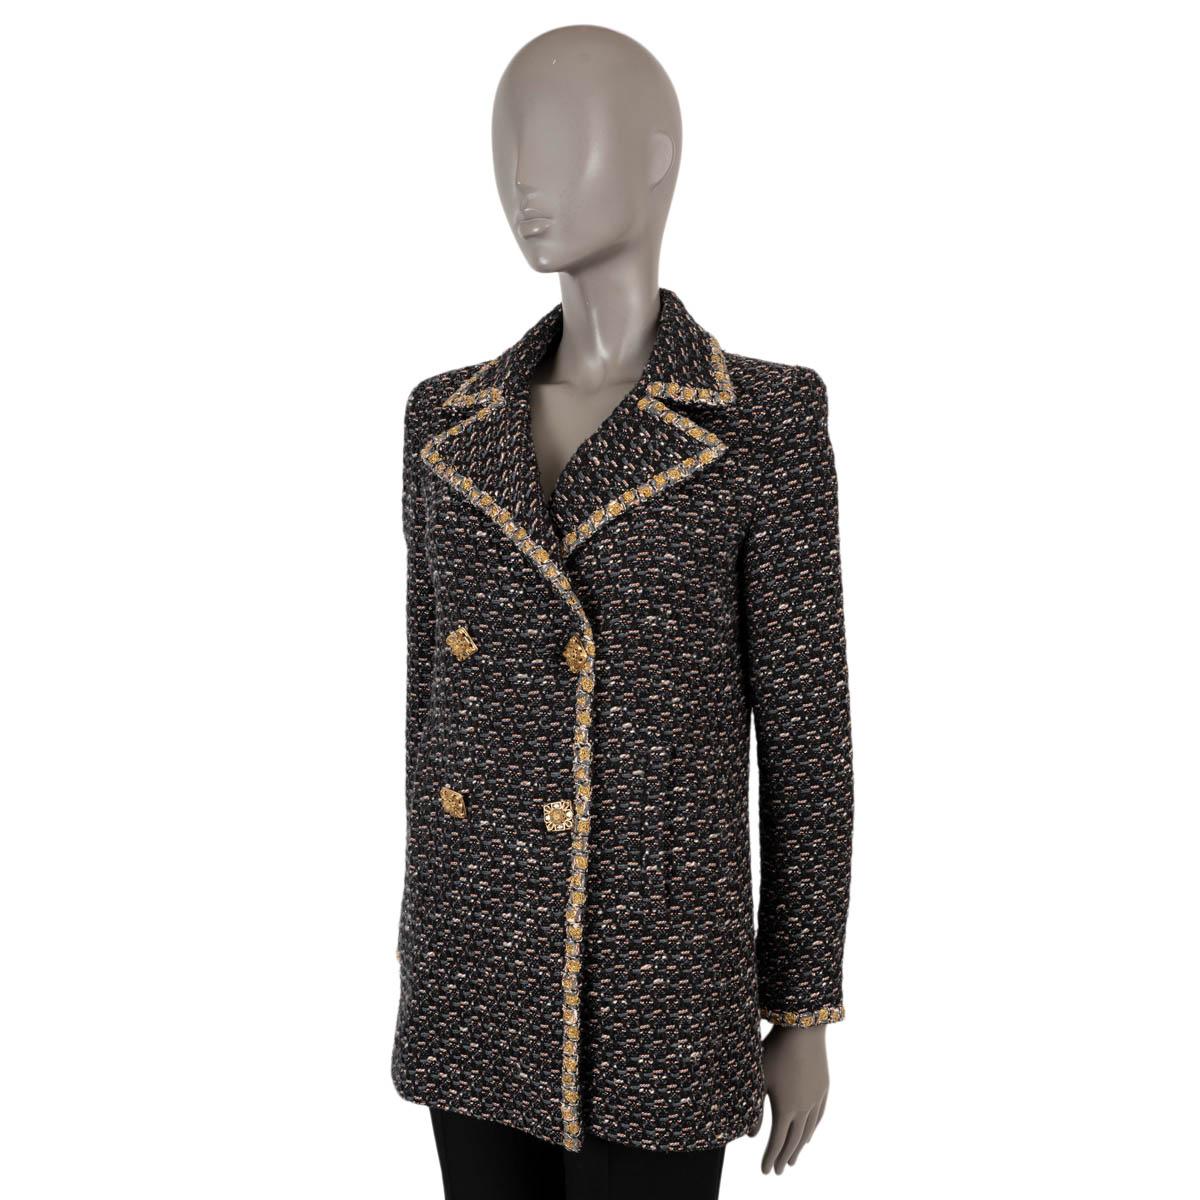 100% authentische Chanel Tweed-Peacoat-Jacke aus schwarzem, grauem, weißem und orangefarbenem Tweed aus Wolle (69%), Polyamid (20%) und Baumwolle (11%). Das Design zeichnet sich durch vier mit Steinen verzierte, goldfarbene Knöpfe, einen an jeder